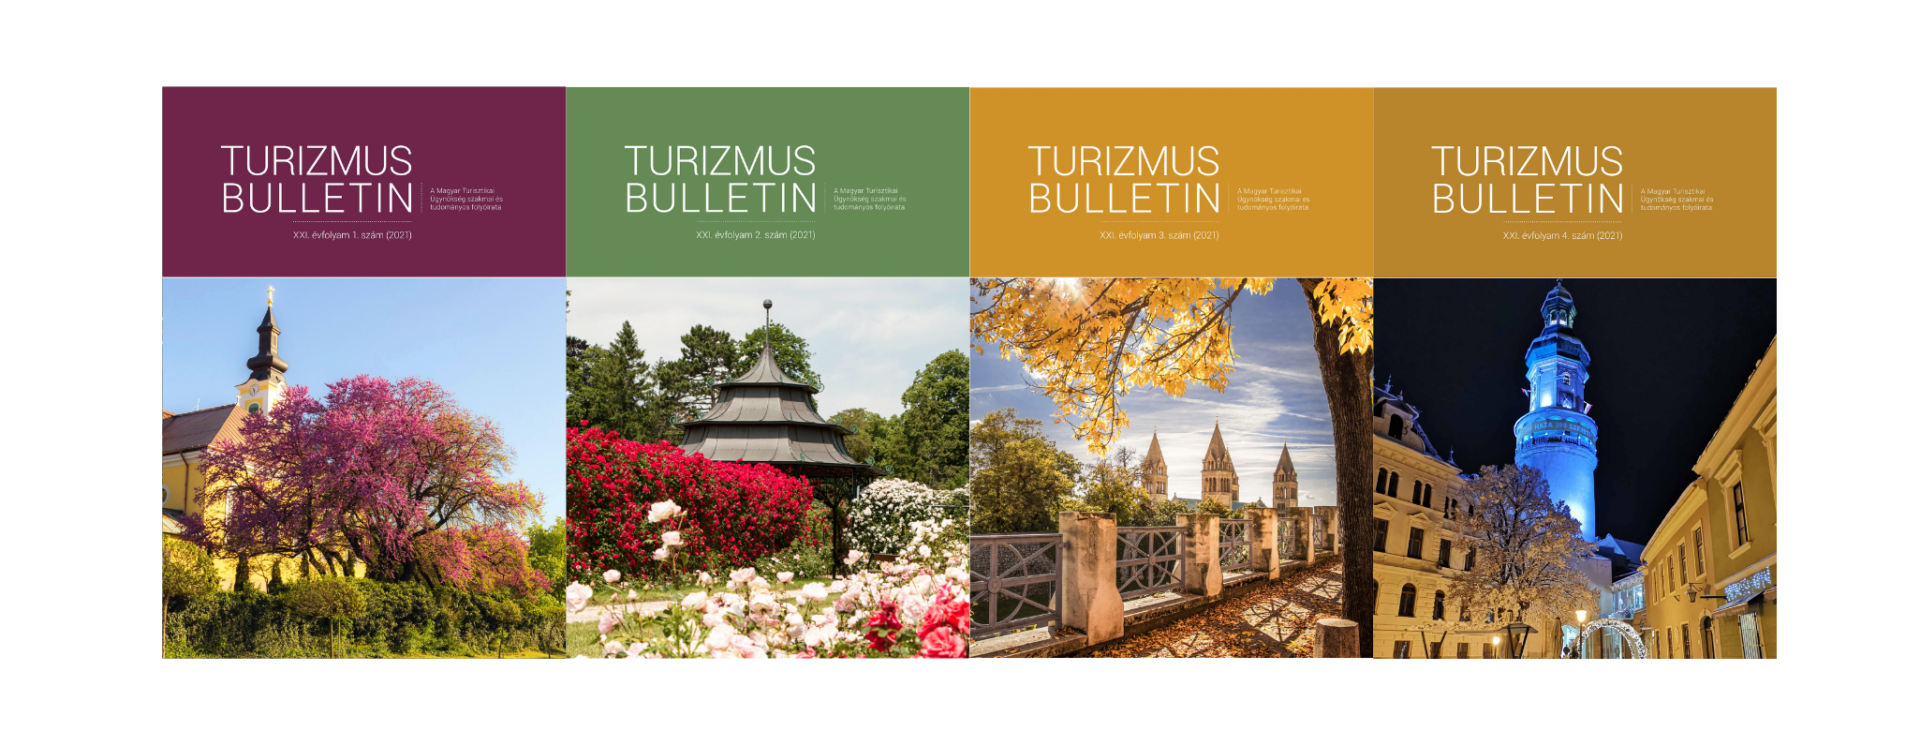 Turizmus Bulletin 2021. számainak borítói